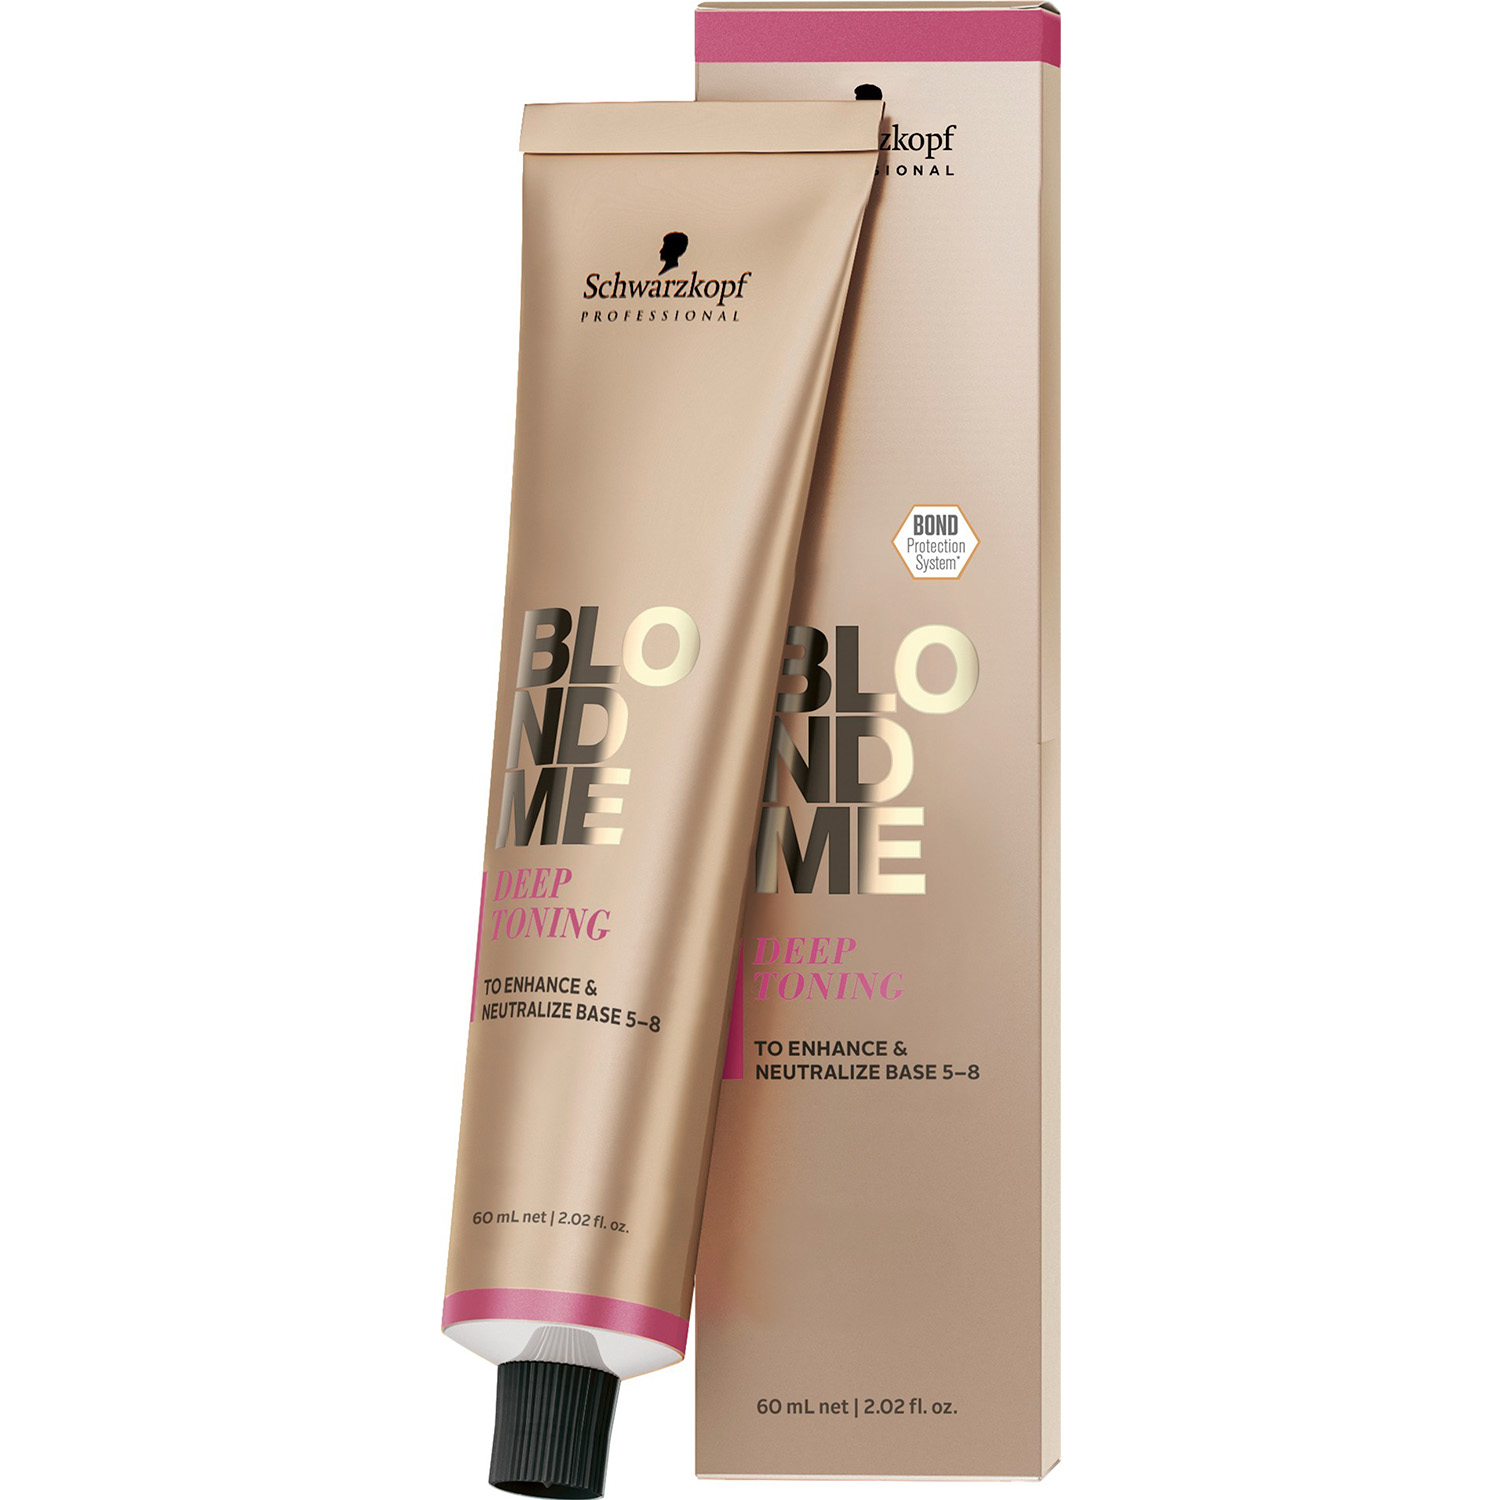 Бондинг-крем для волос Schwarzkopf Professional BlondMe Deep Toning, тон персиковый сорбет, 60 мл - фото 1